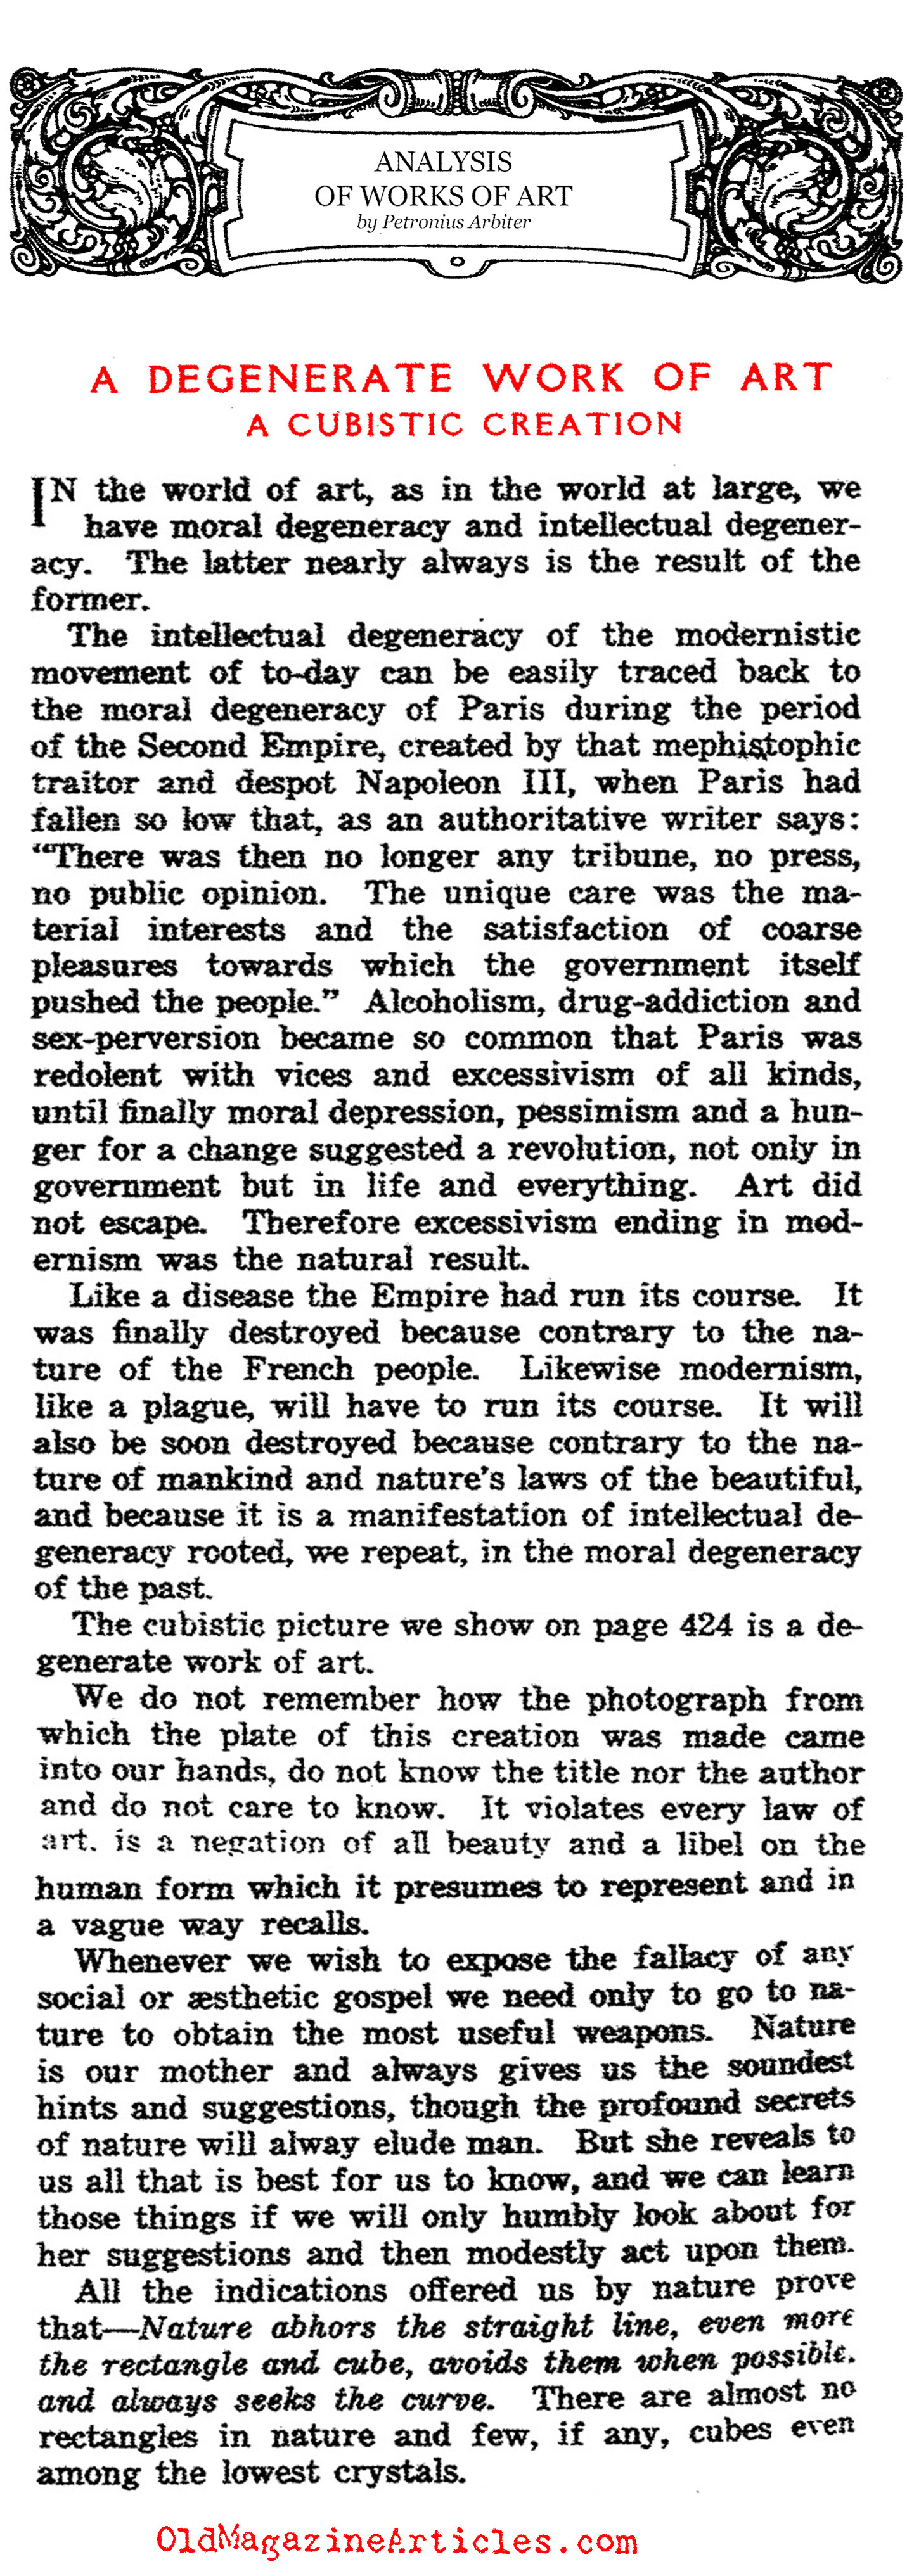 Cubism: A Degenerate Work of Art (The Art World, 1917)